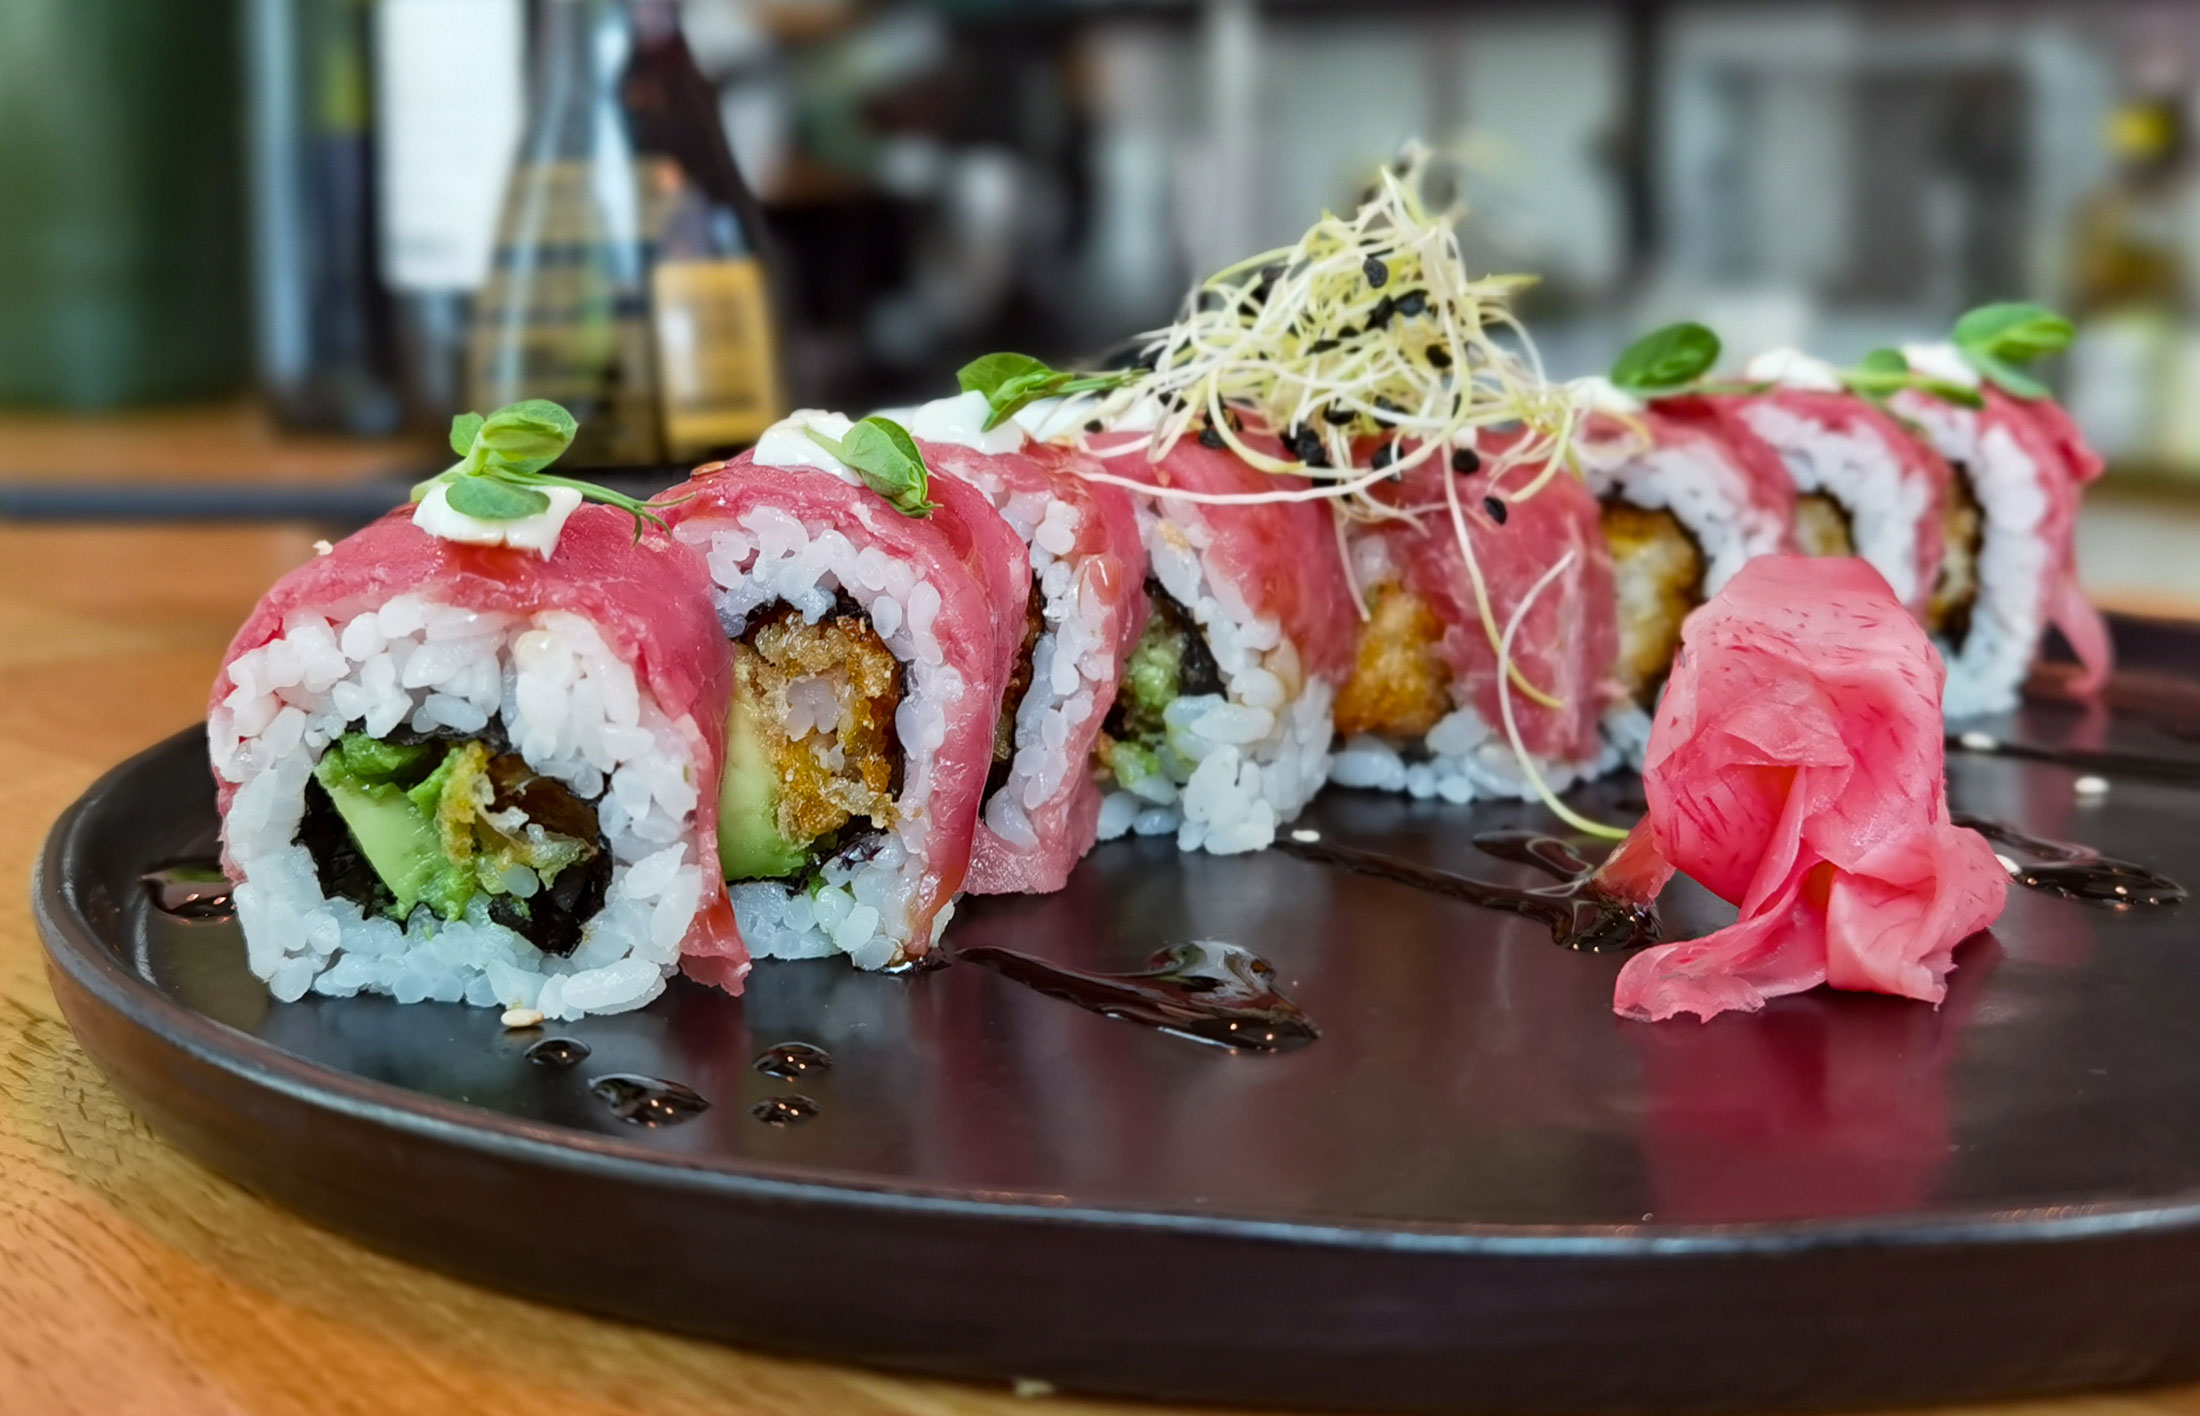 Bester Geschmack und höchste Qualität zeichnen das Sushi aus.